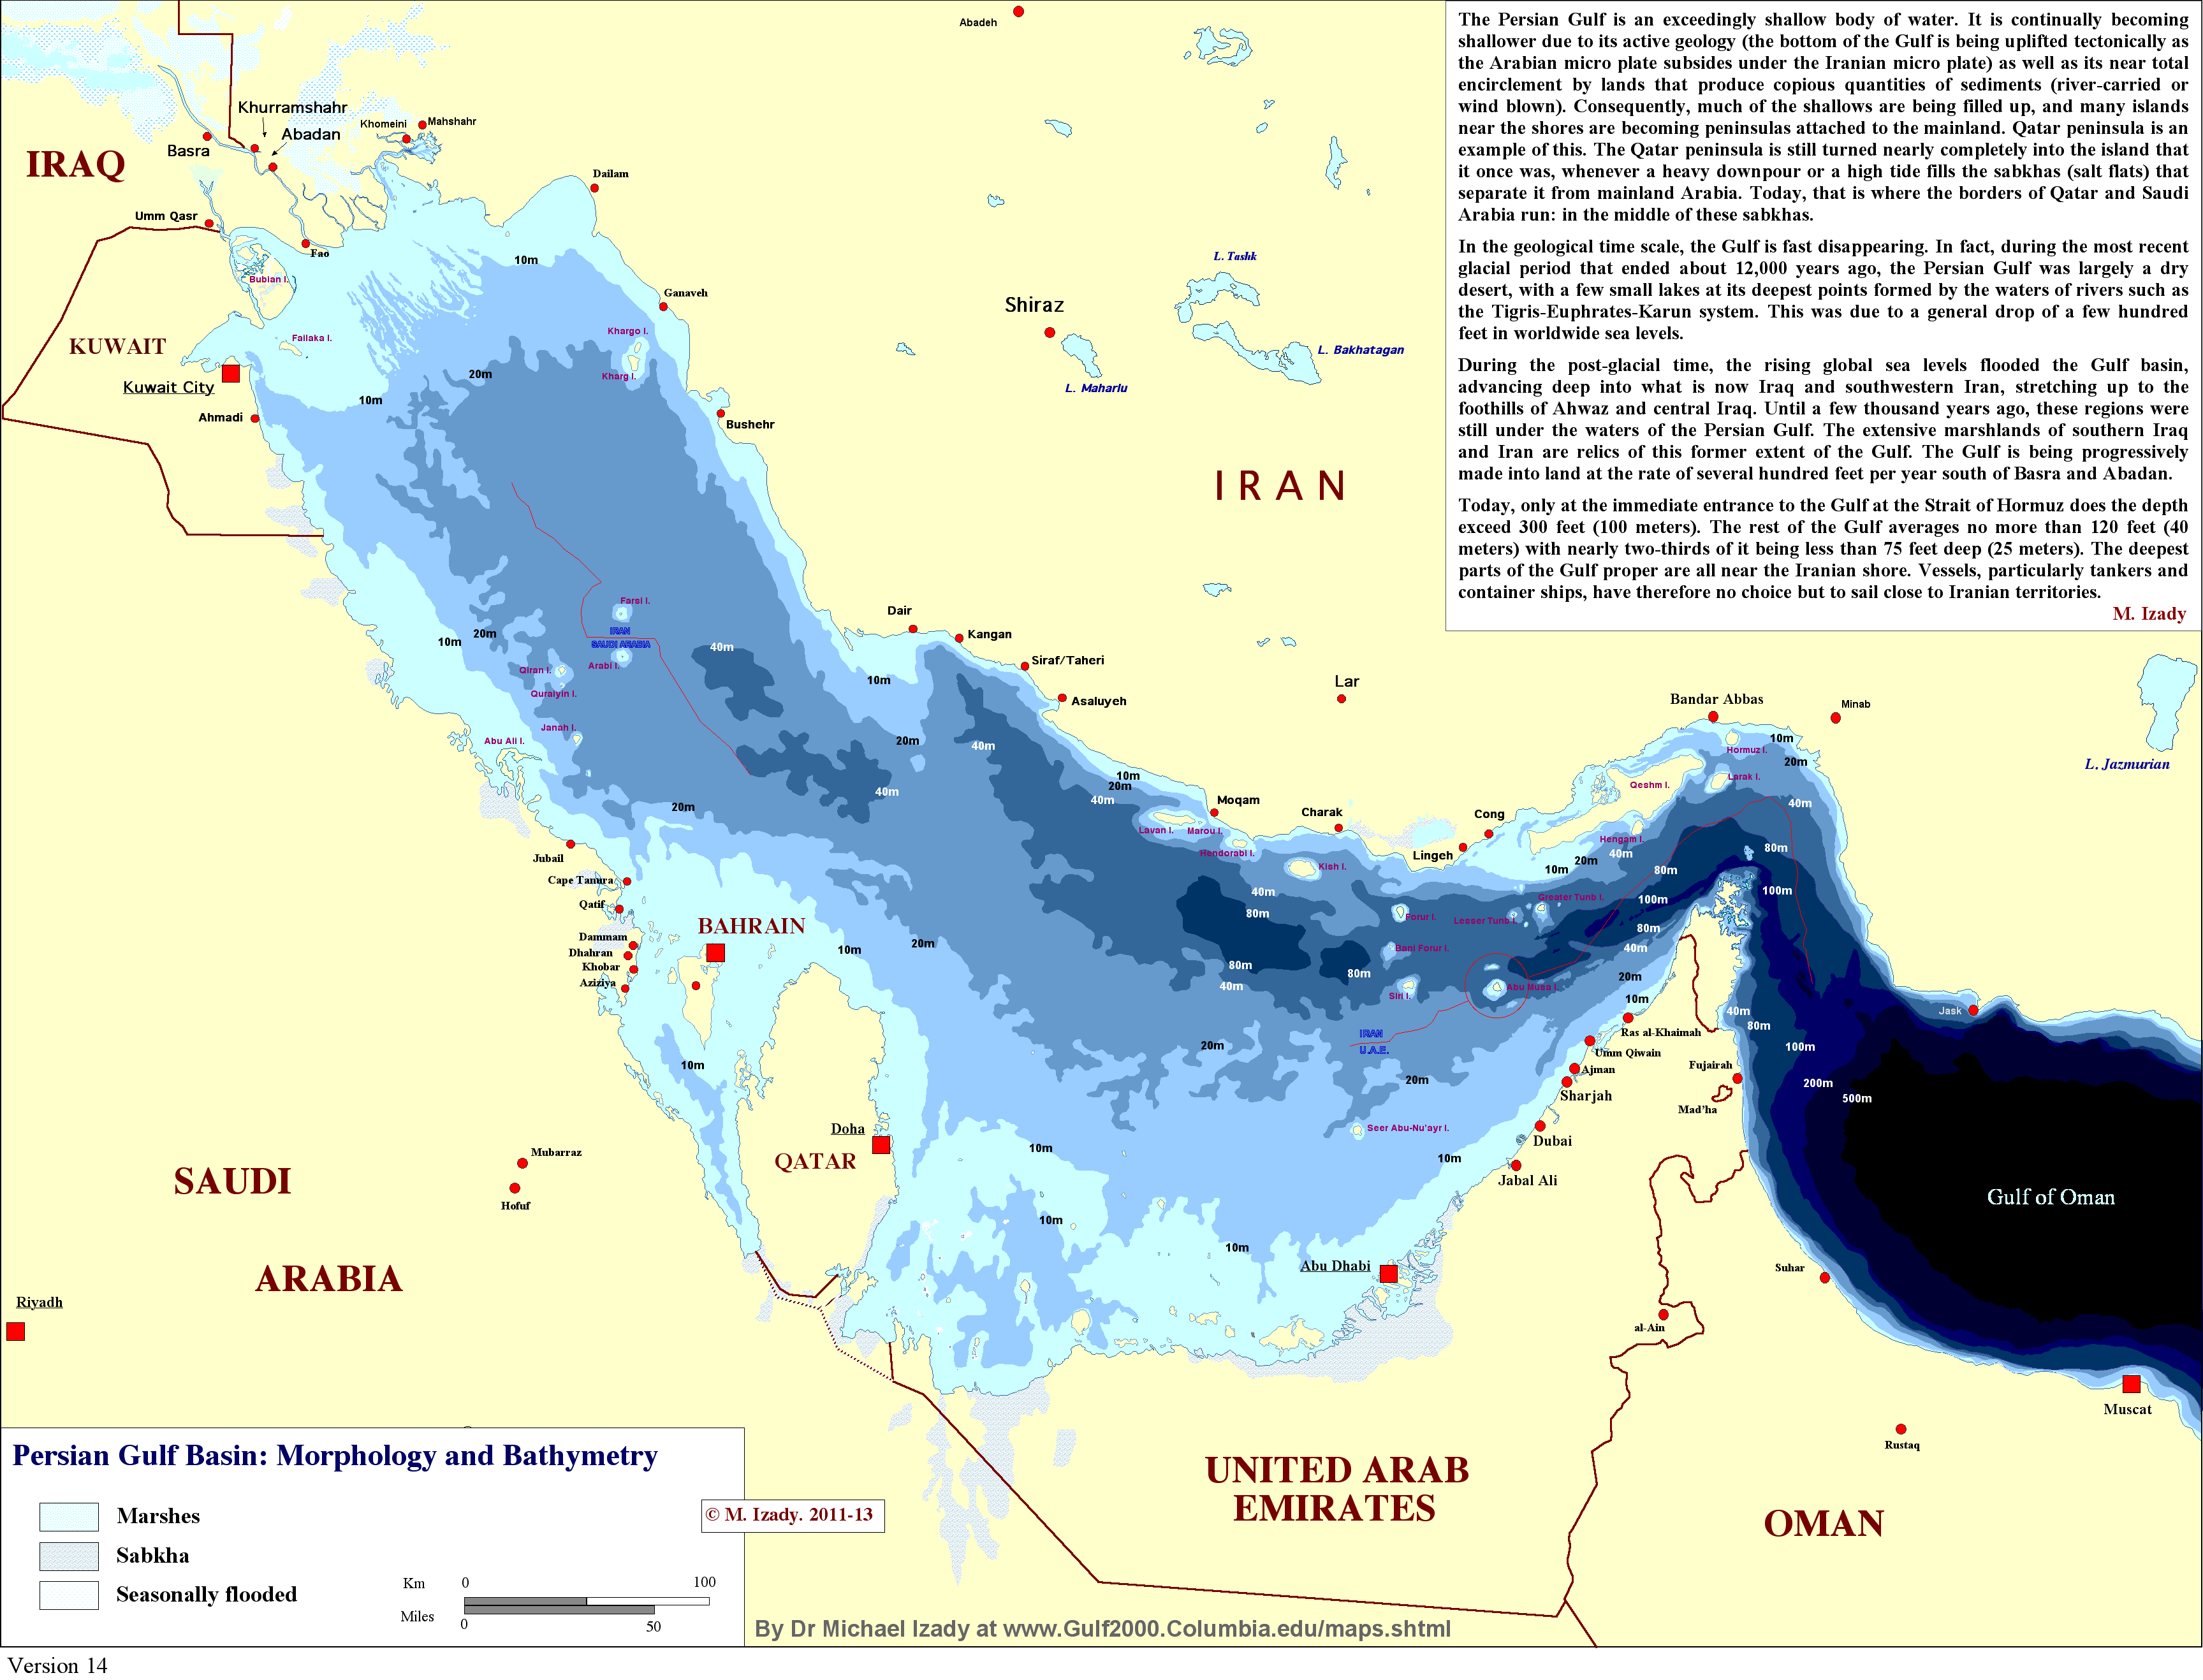 Persian Gulf Basin - Morphology and Bathymery